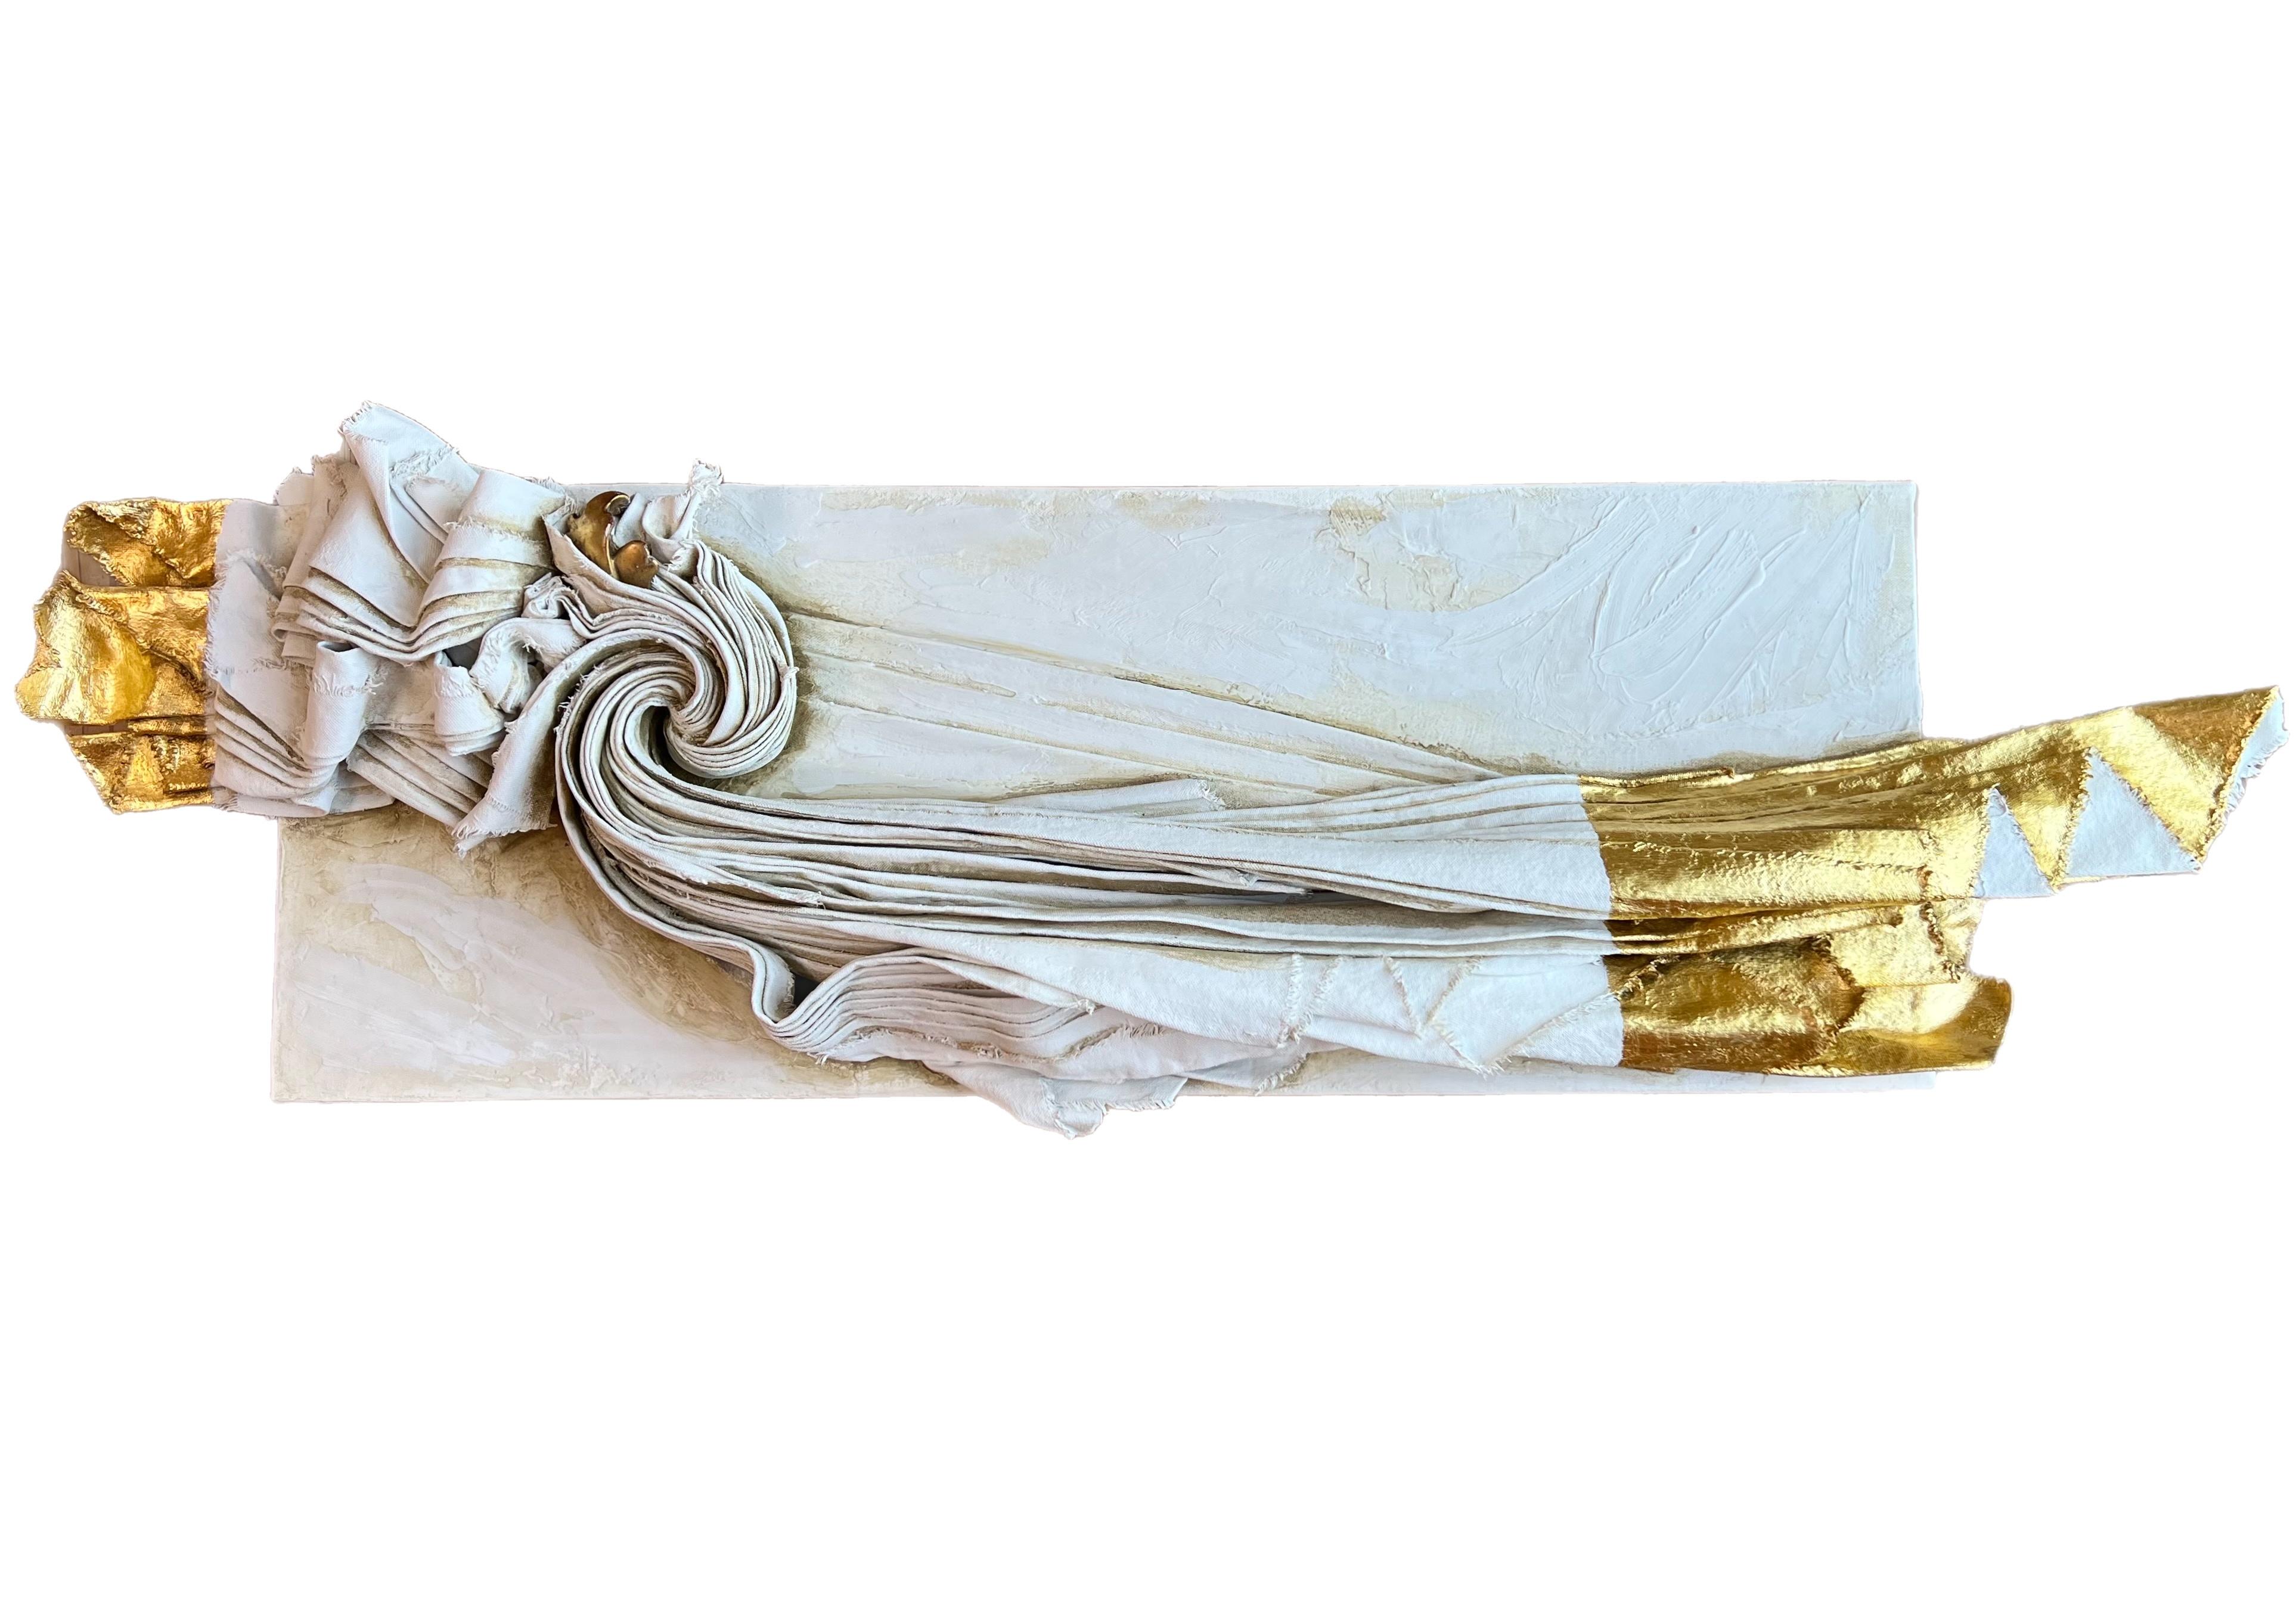 Skulpturale Leinwand mit einem italienischen Vergoldungsfragment aus dem 17. Jahrhundert und 24-karätigem Blattgold.

Die skulpturale Leinwand ist mit Gesso, Vergoldungswachs, Marmorpaste, grüner Erde, italienischem Ocker und Asche auf Karton